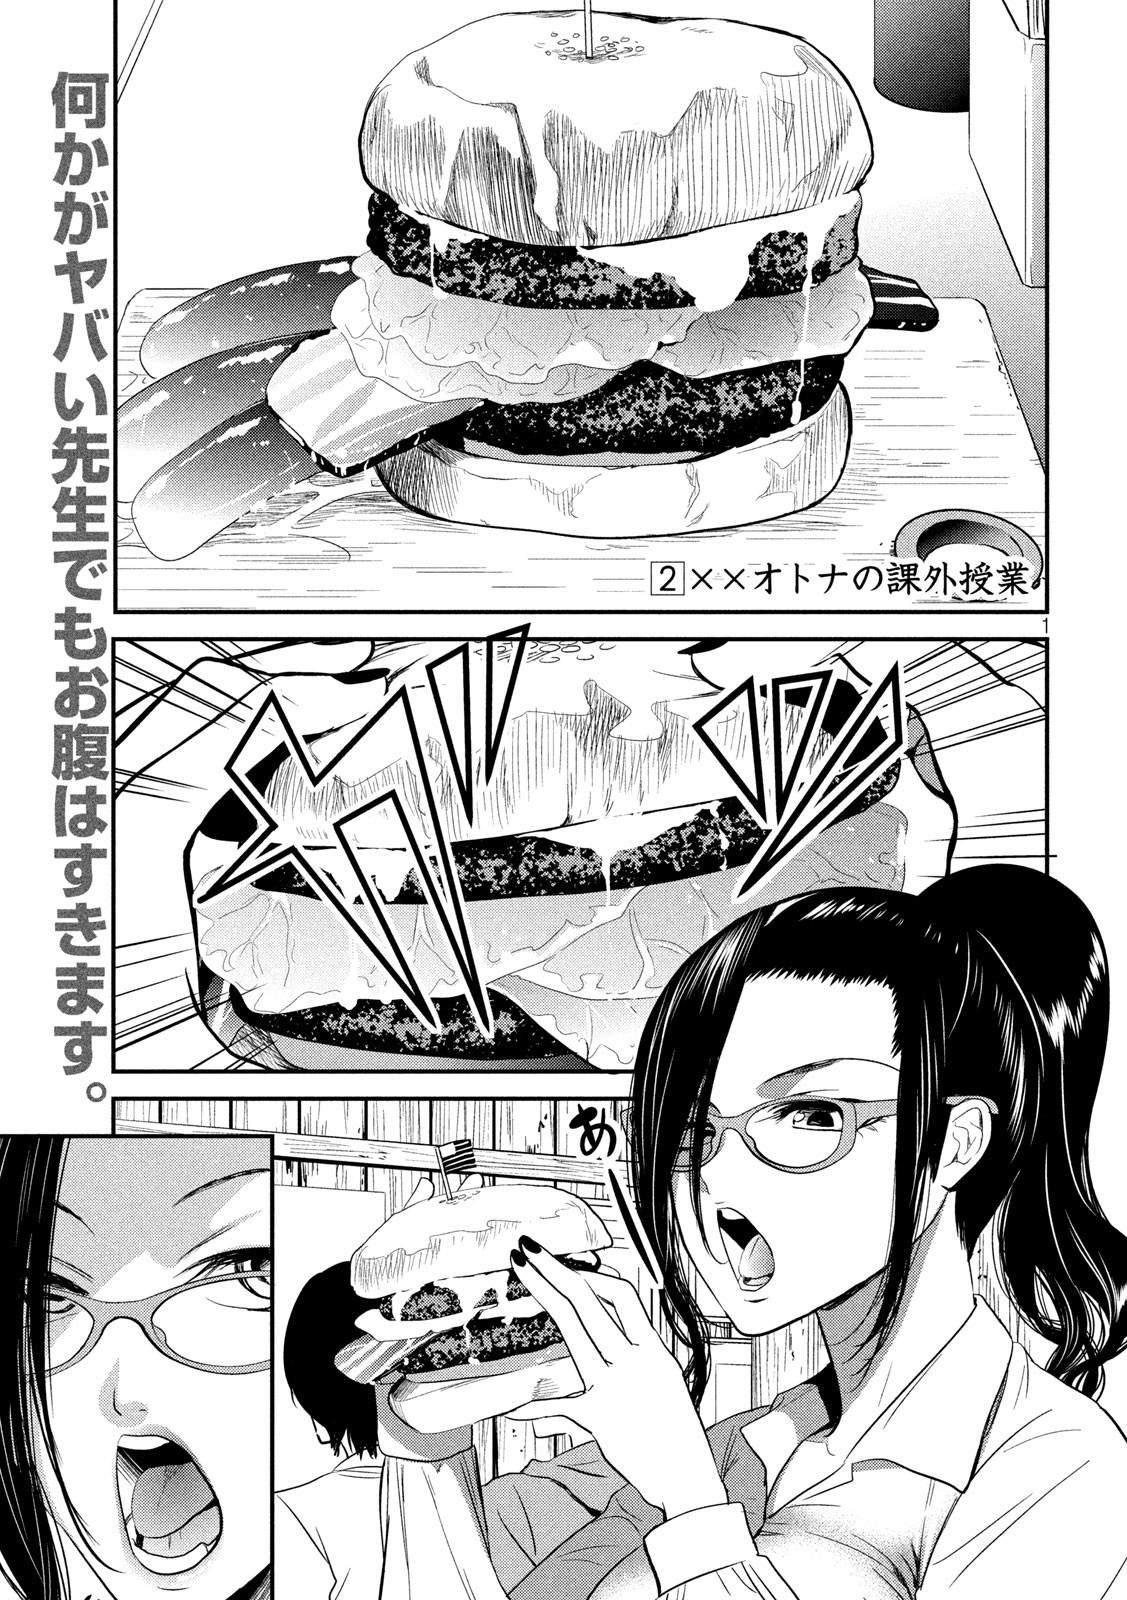 Eigo ×× Sensei - Chapter 2 - Page 1